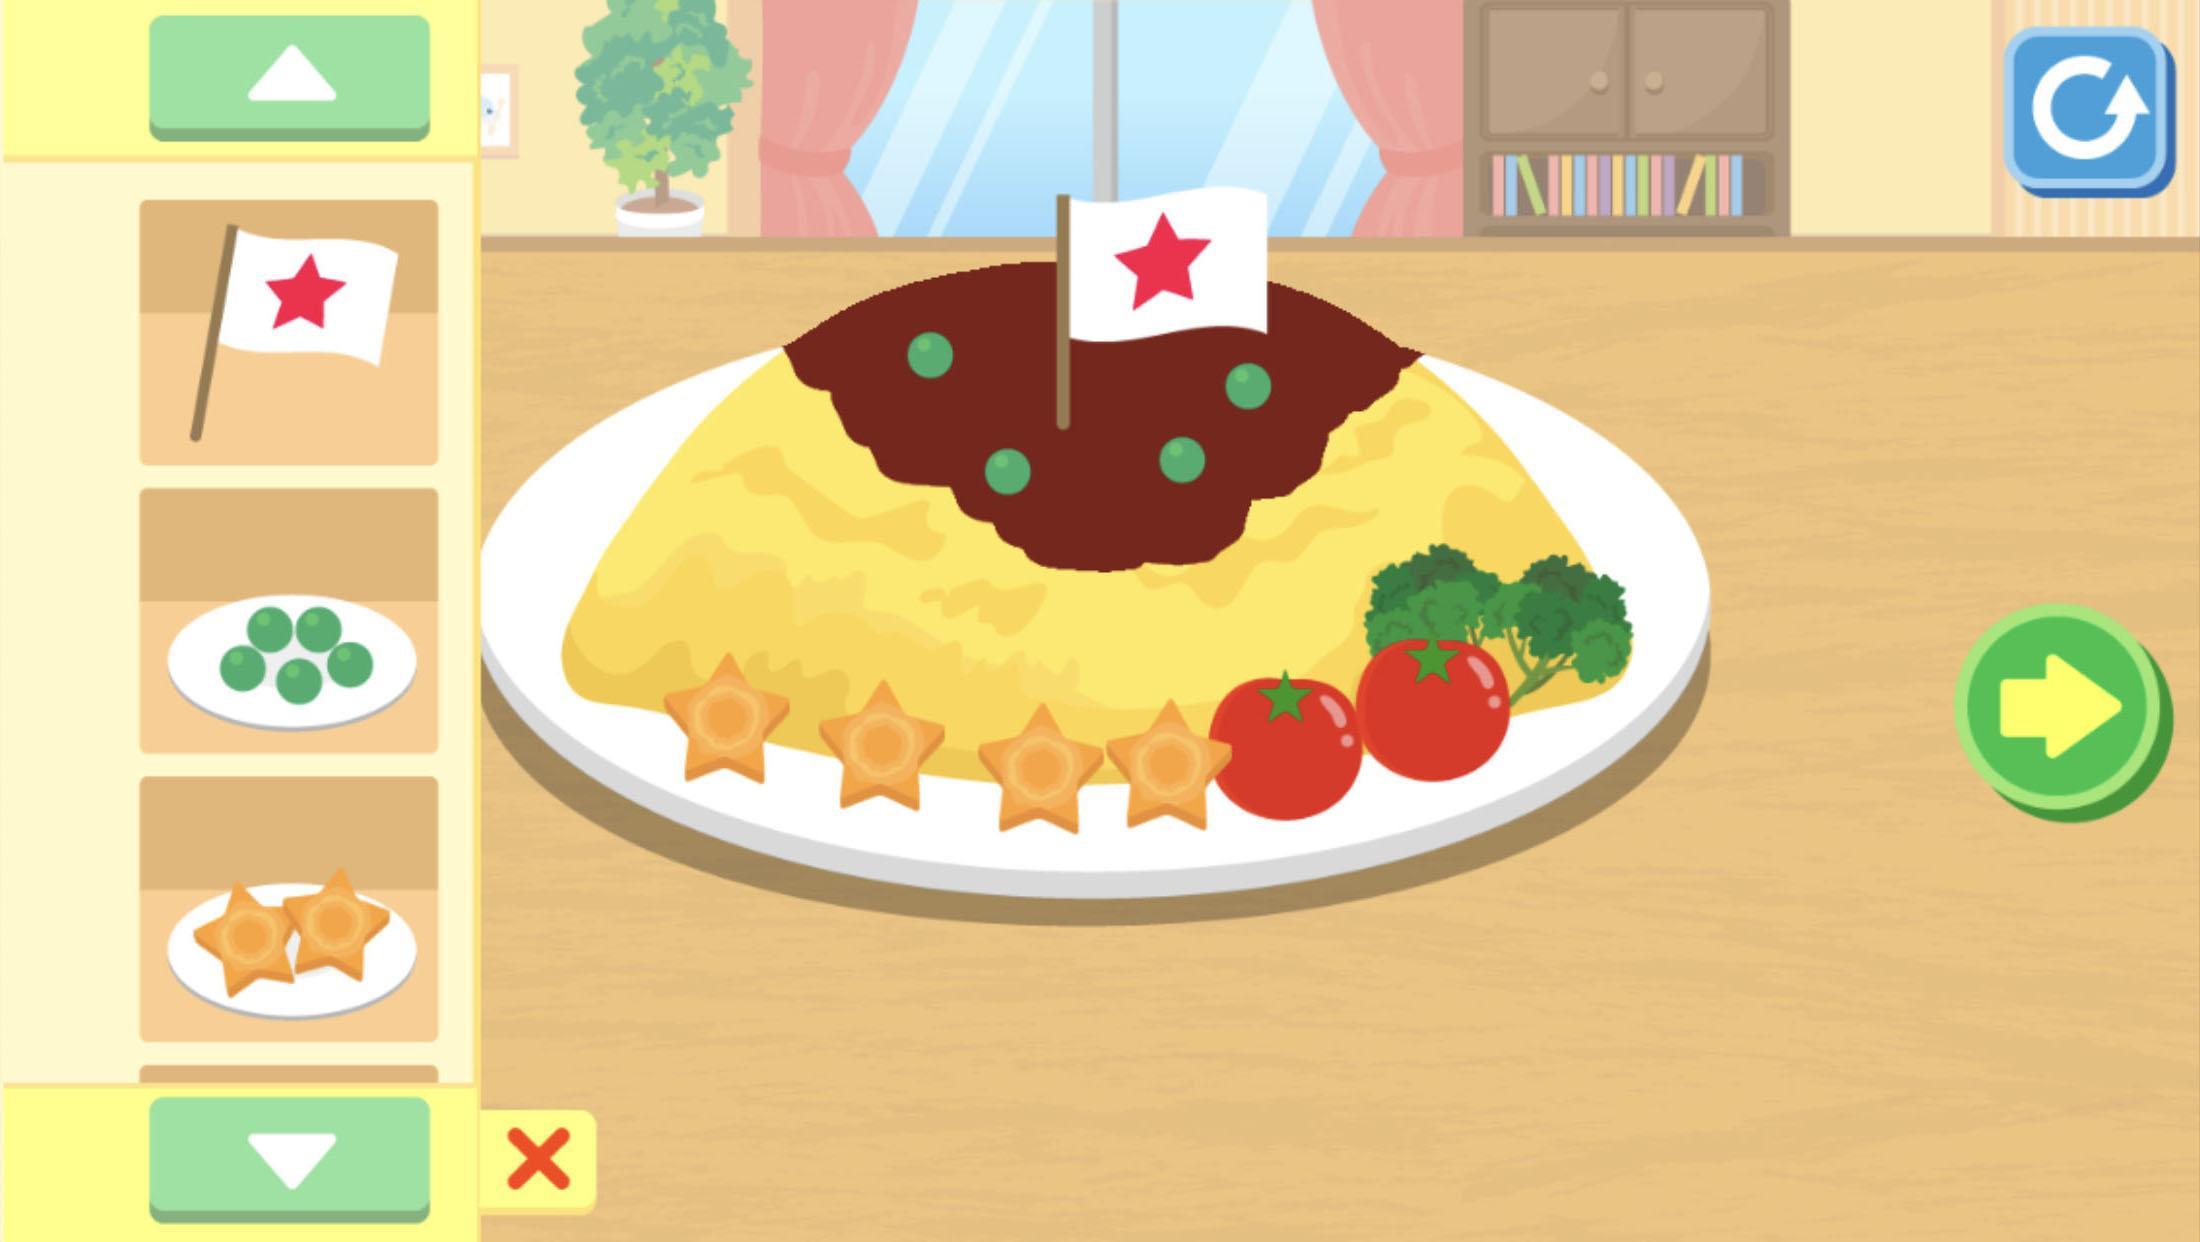 はらぺこクッキング お料理を作って楽しむ子供向け料理ゲームアプリ For Android Apk Download